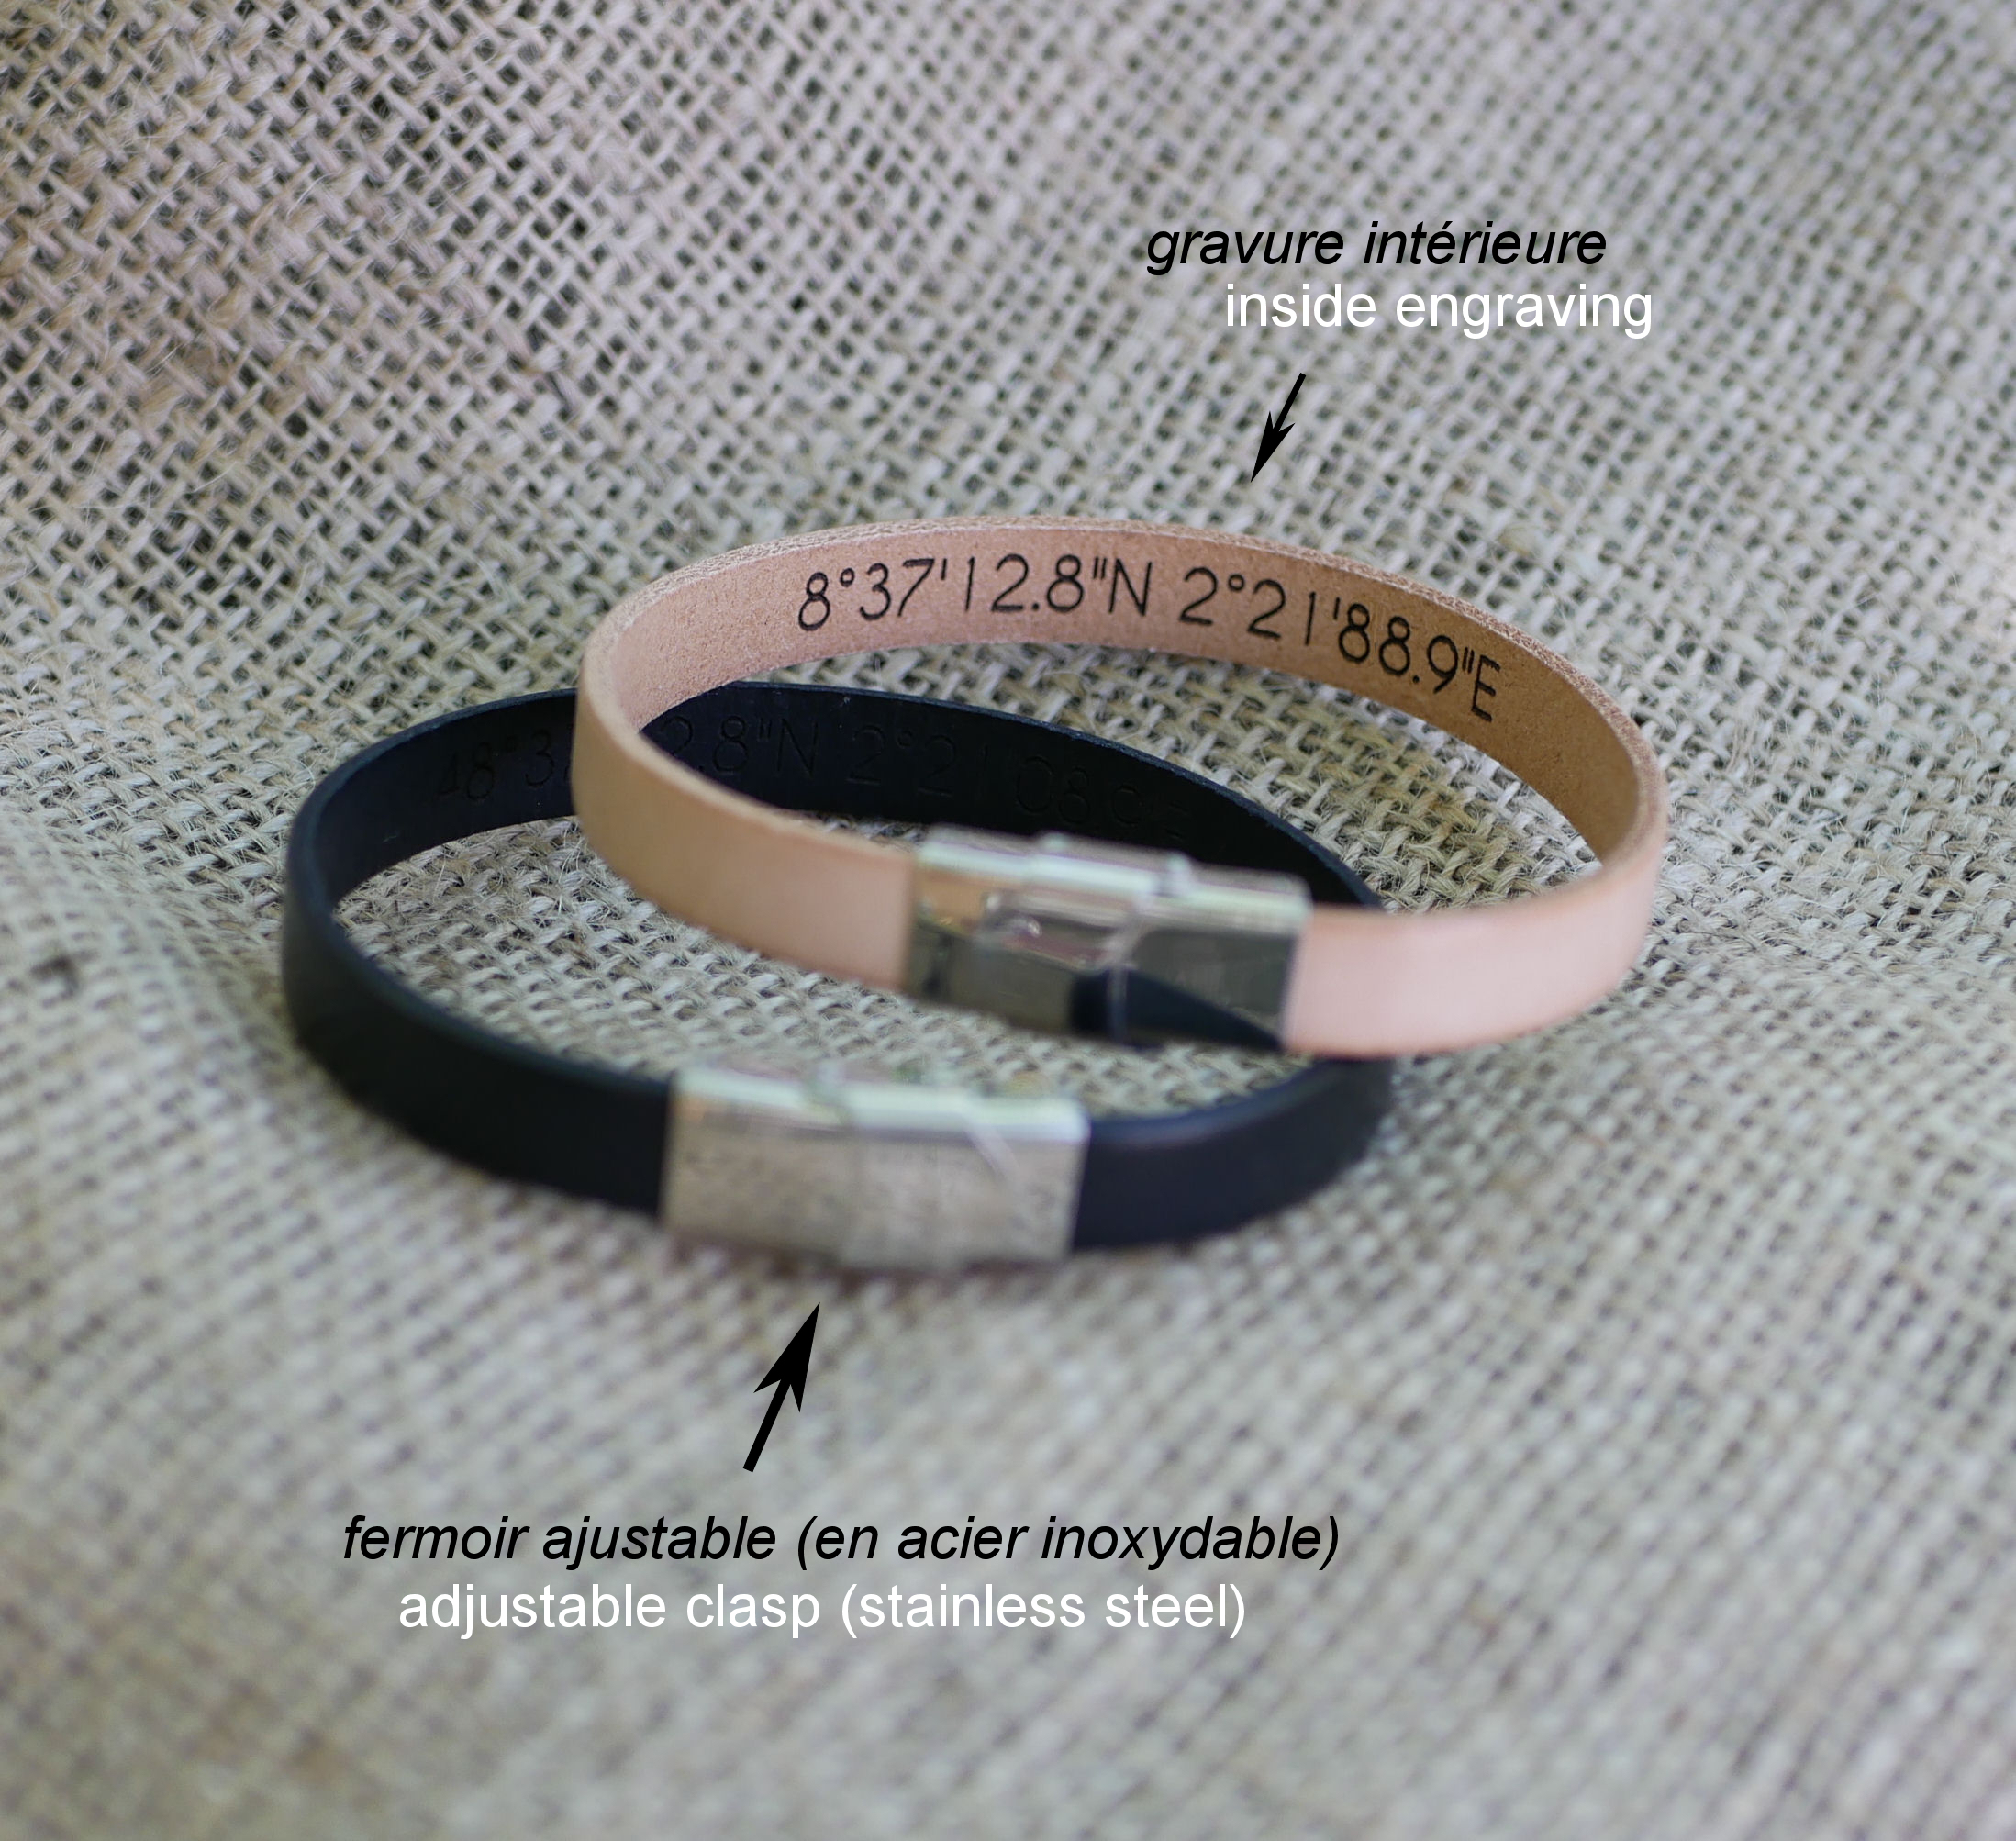 Cadeau gavré pour couple : 2 bracelet cuir personnalisés par gravure 